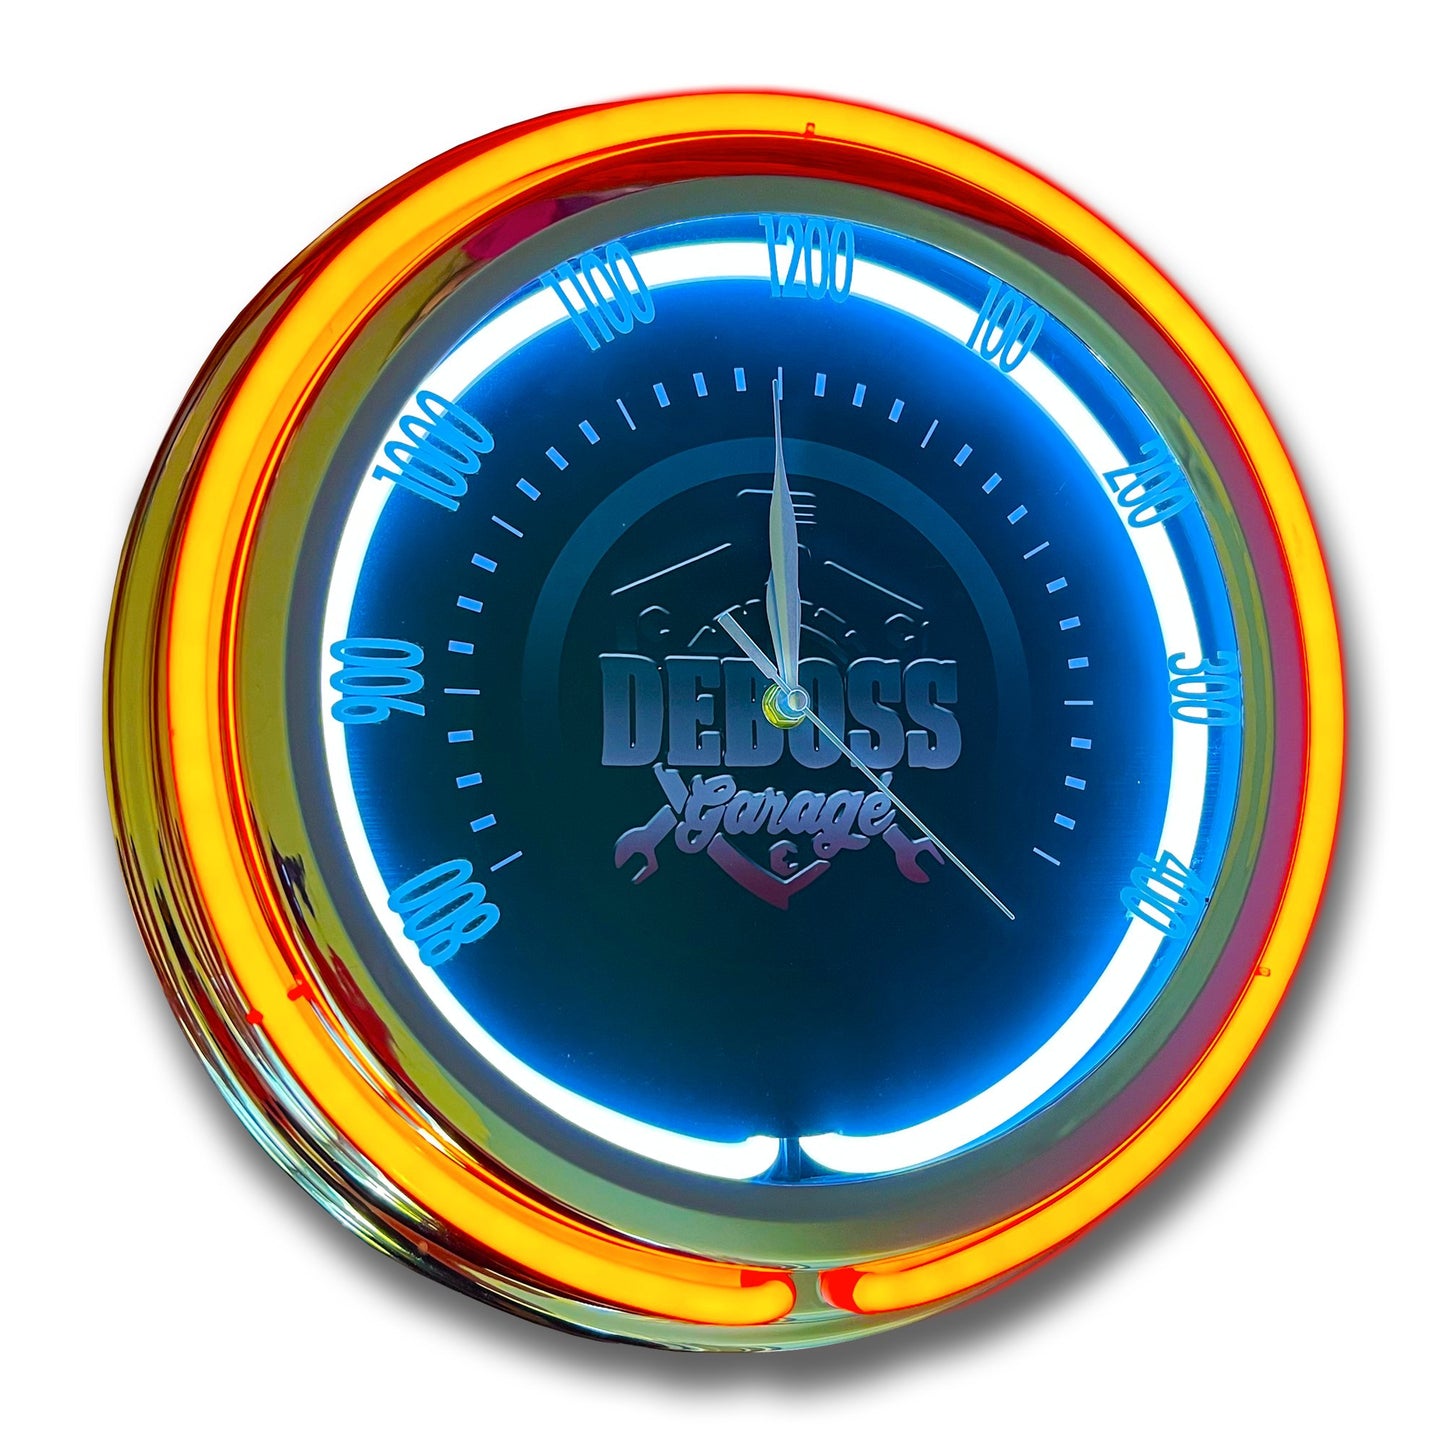 15" DG Emblem Double Neon Clock